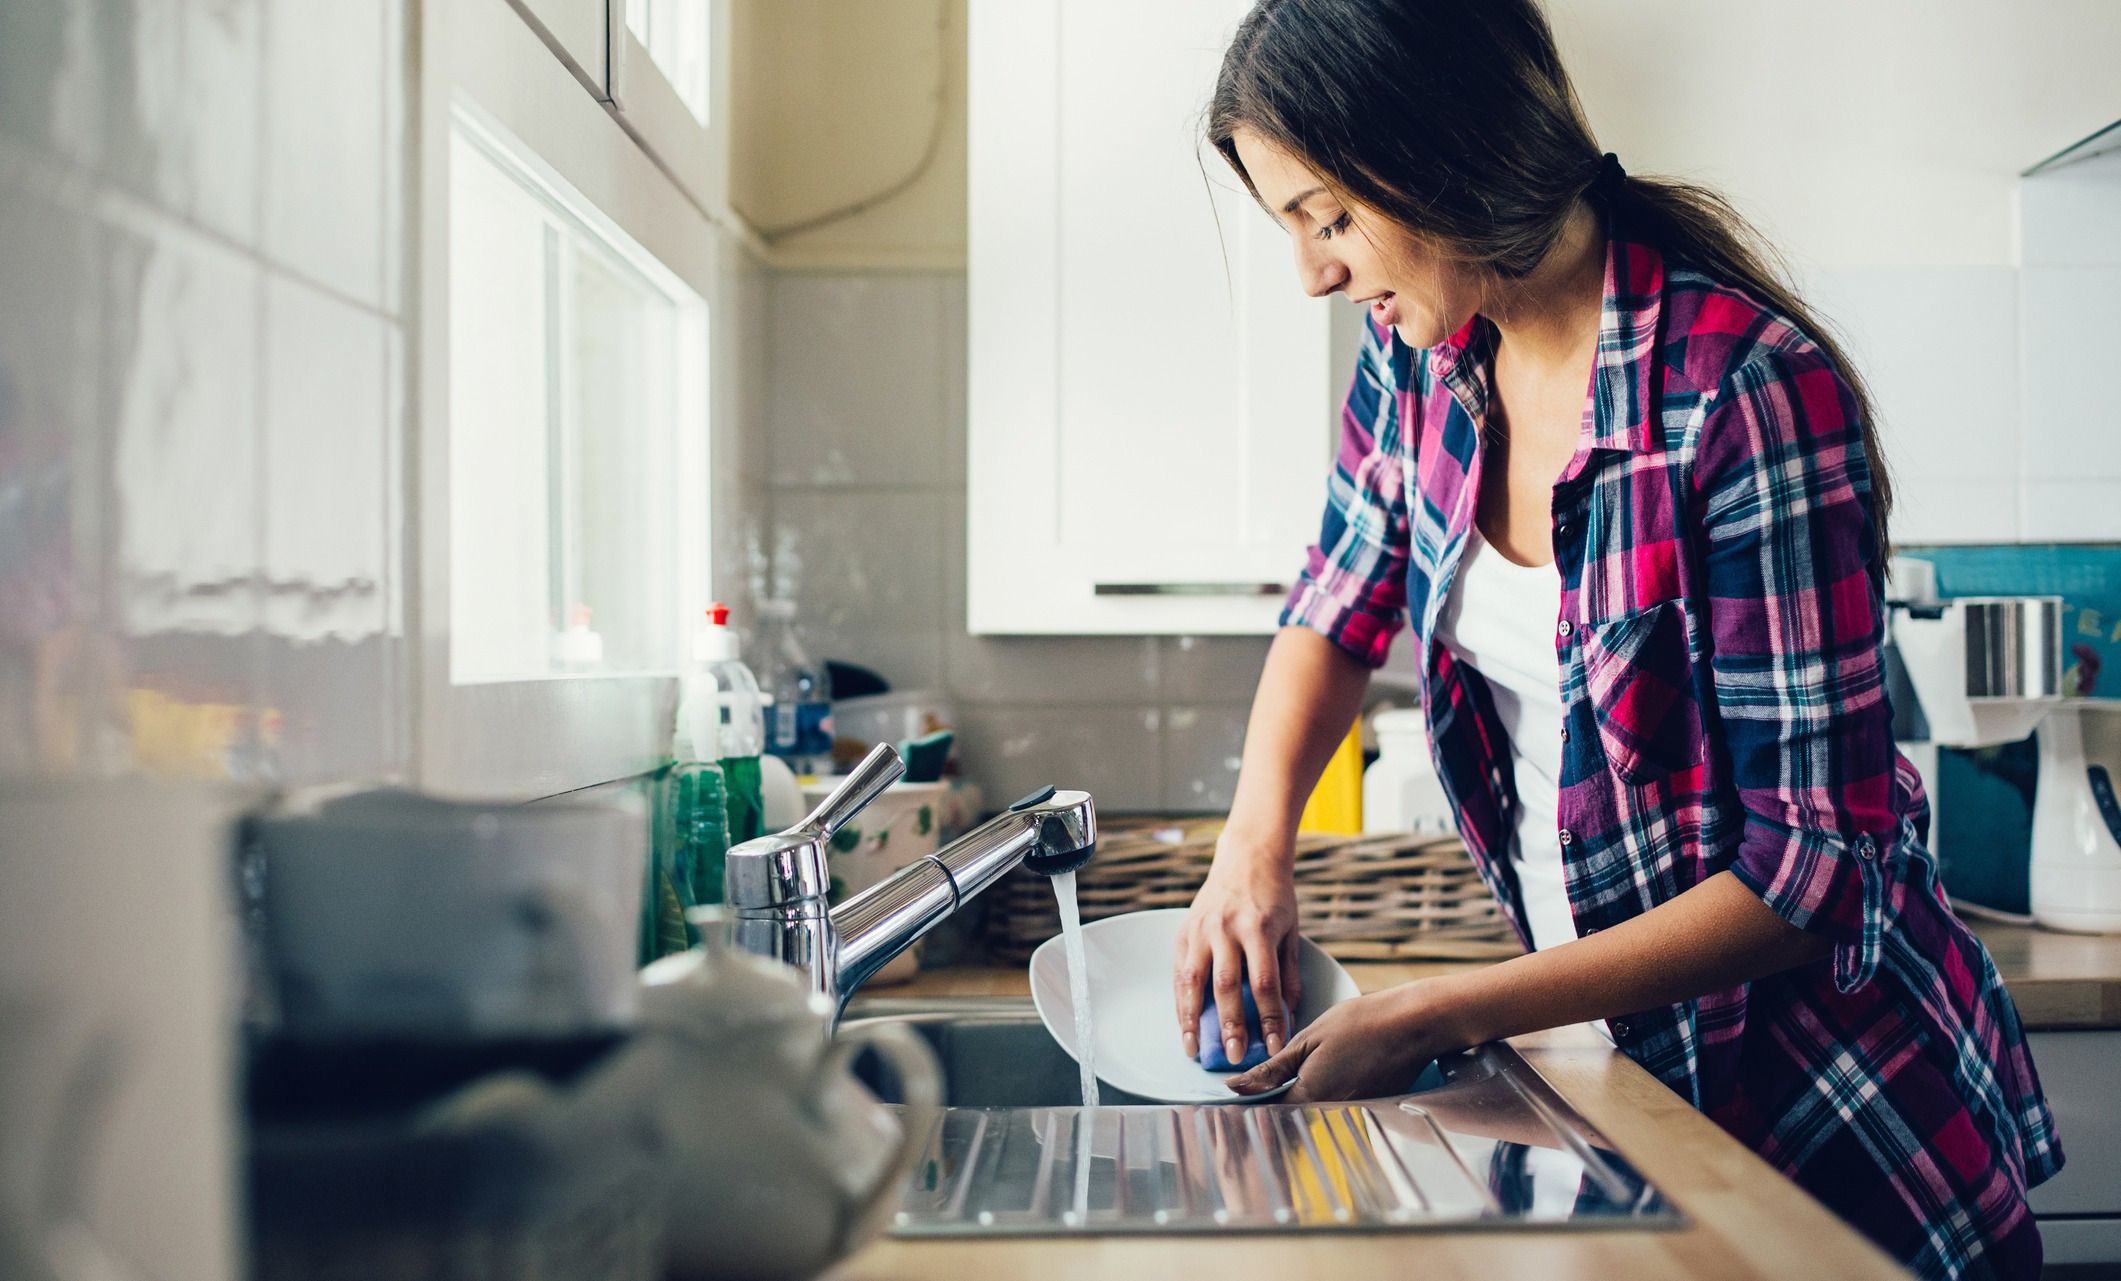 Мити посуд у гостях не можна — і ось чому. У своєму будинку не допускайте до прибирання столу сторонніх, крім родичів.